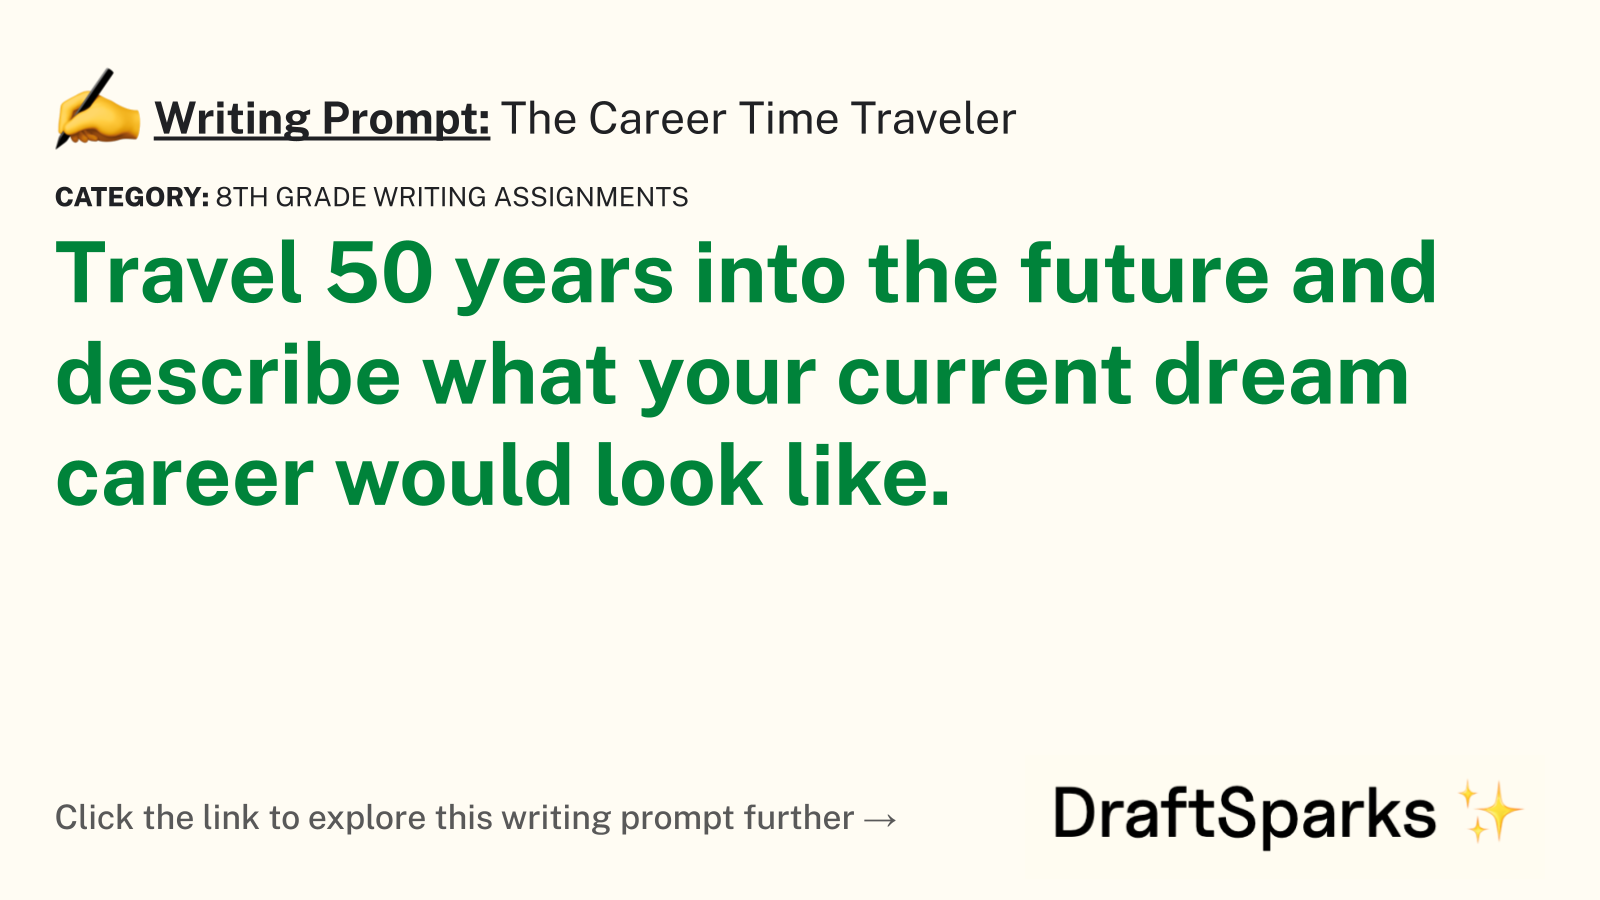 The Career Time Traveler